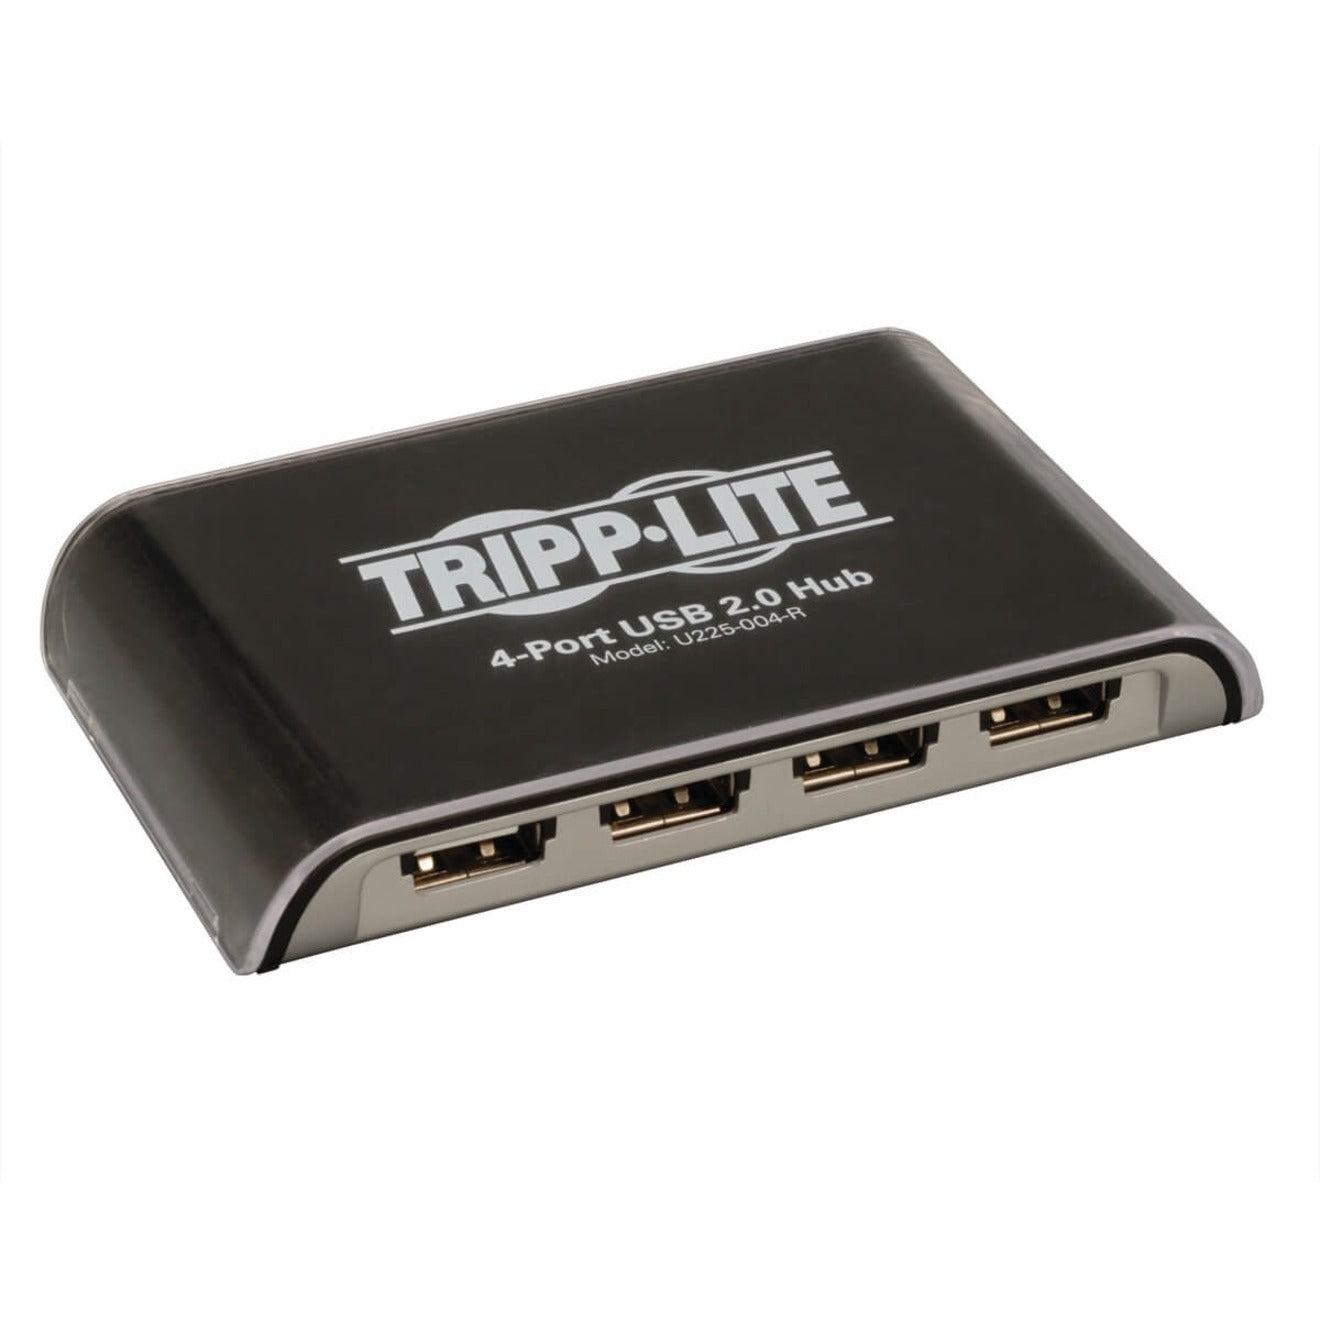 Tripp Lite U225-004-R 4-Port USB Mini Hub, Black, Compact and Convenient USB Hub for Mac and PC